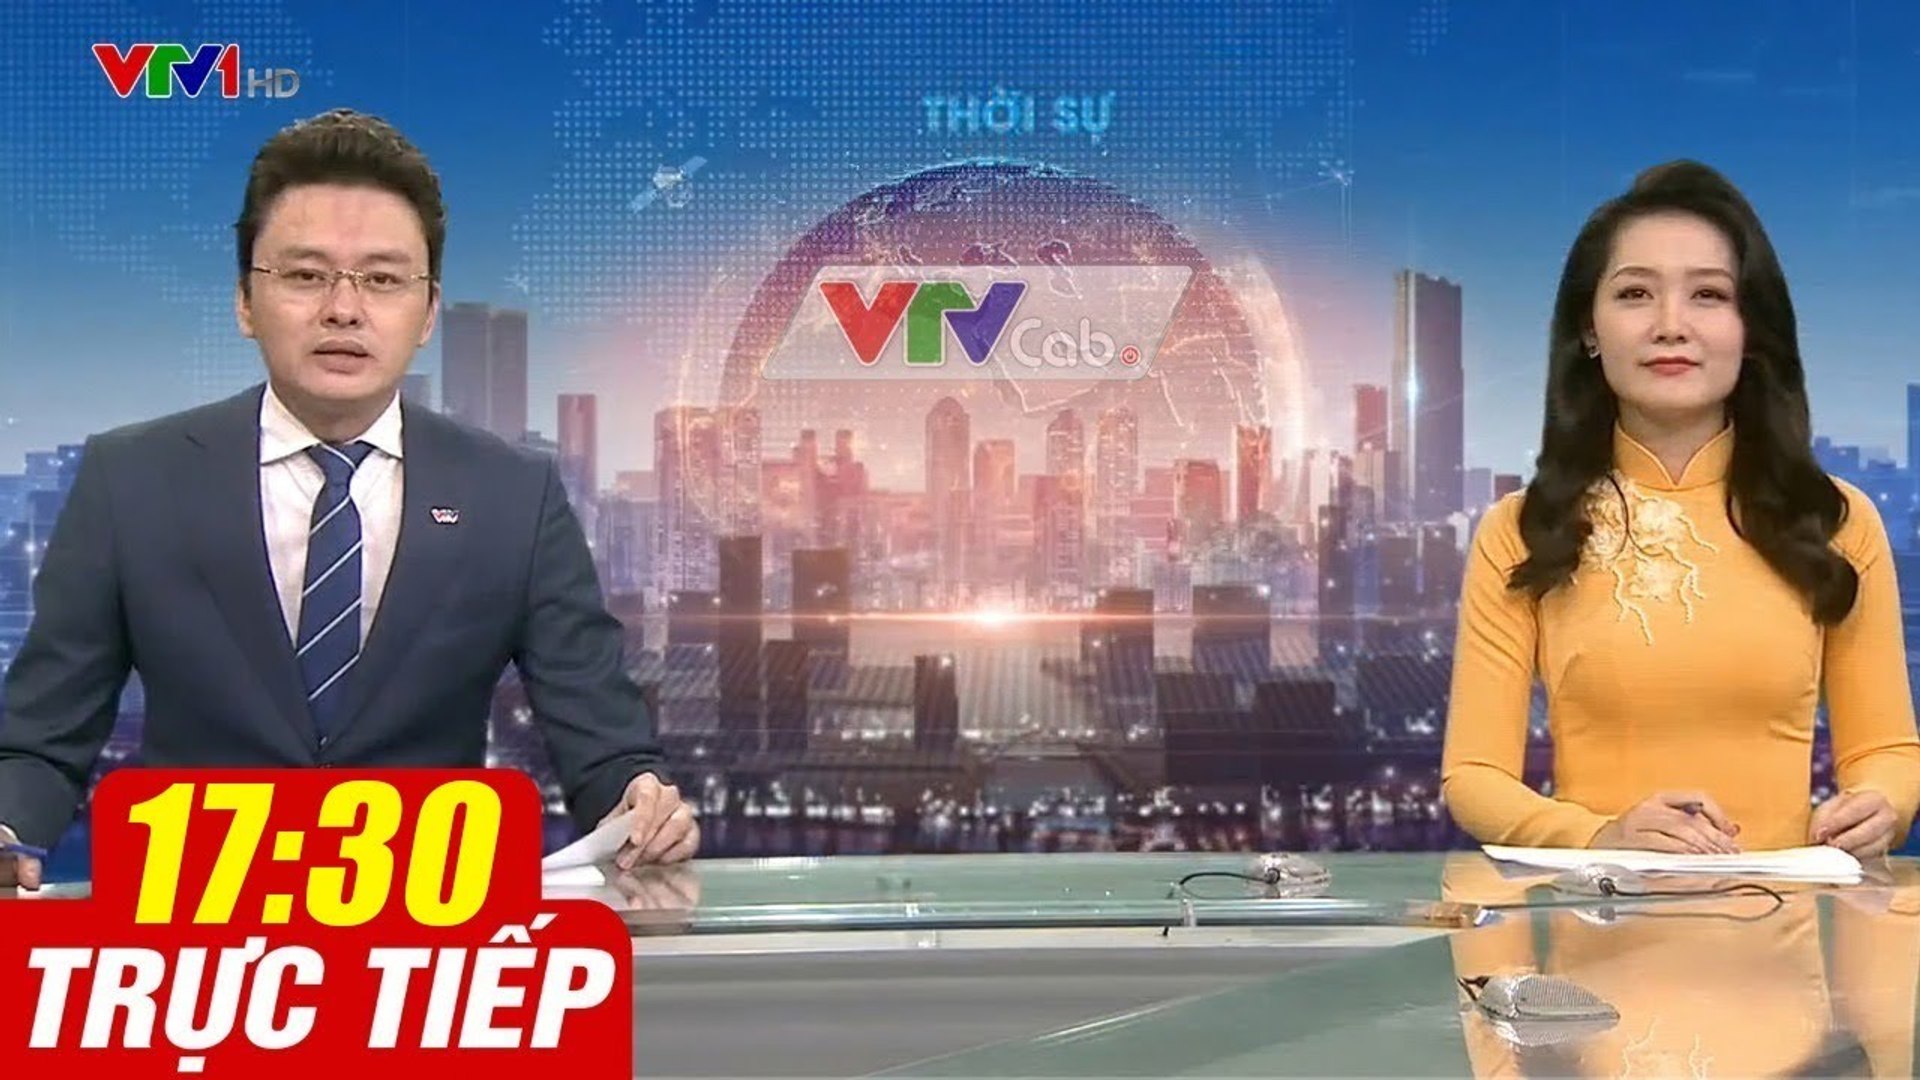 Trực Tiếp VIỆT NAM HÔM NAY 17h30 ngày 31.08.2020  Tin tức thời sự VTV1 mới nhất hôm nay